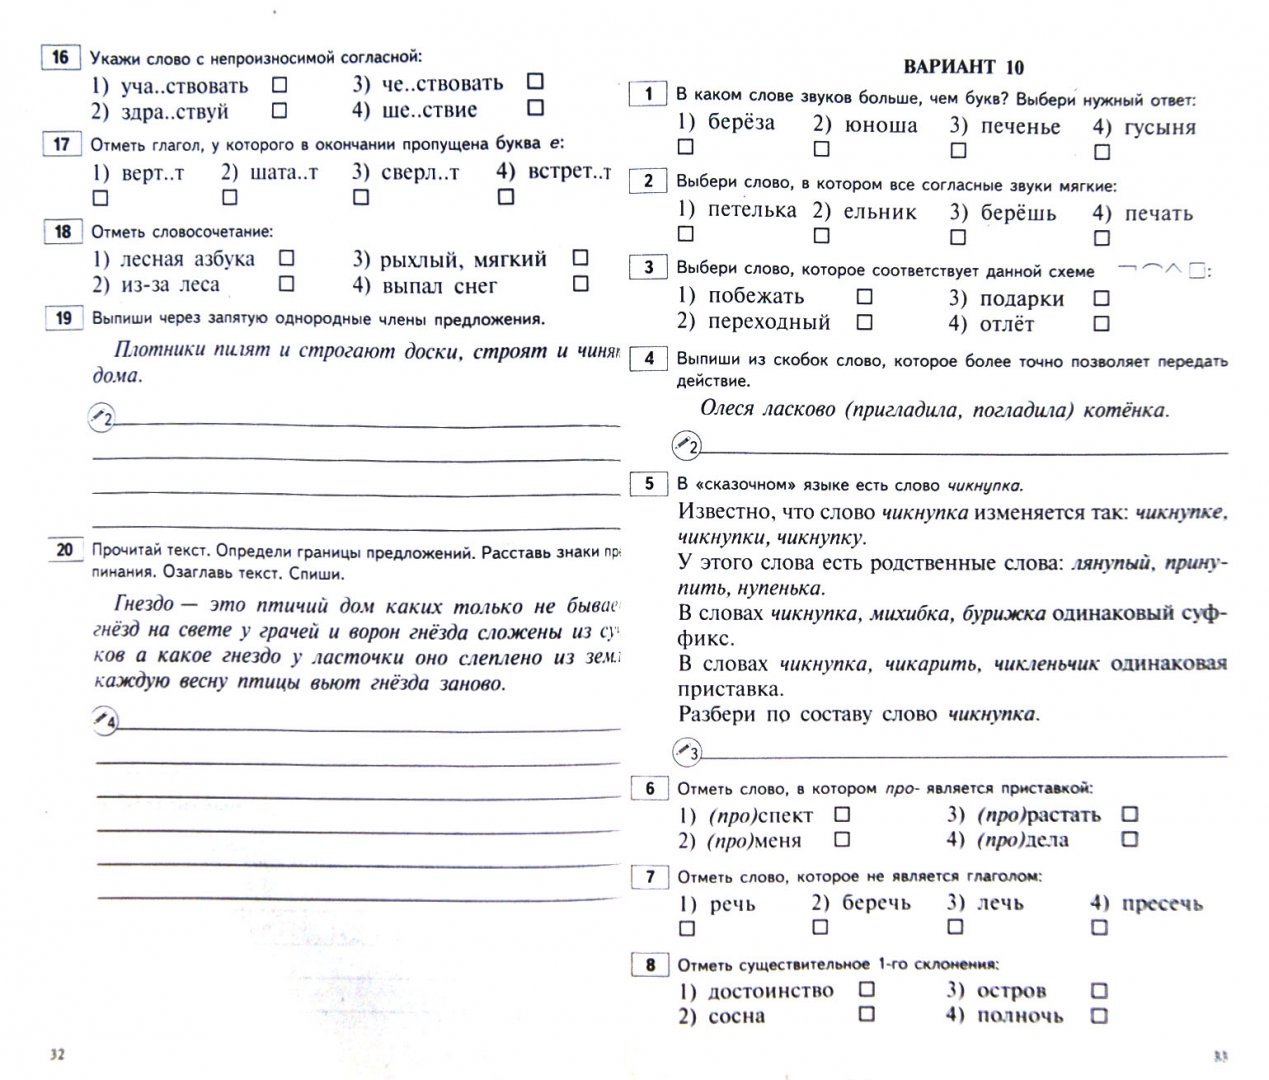 Иллюстрация 1 из 8 для Русский язык. 4 класс. Мониторинг качества знаний: 30 вариантов типовых тестовых заданий с ответами | Лабиринт - книги. Источник: Лабиринт